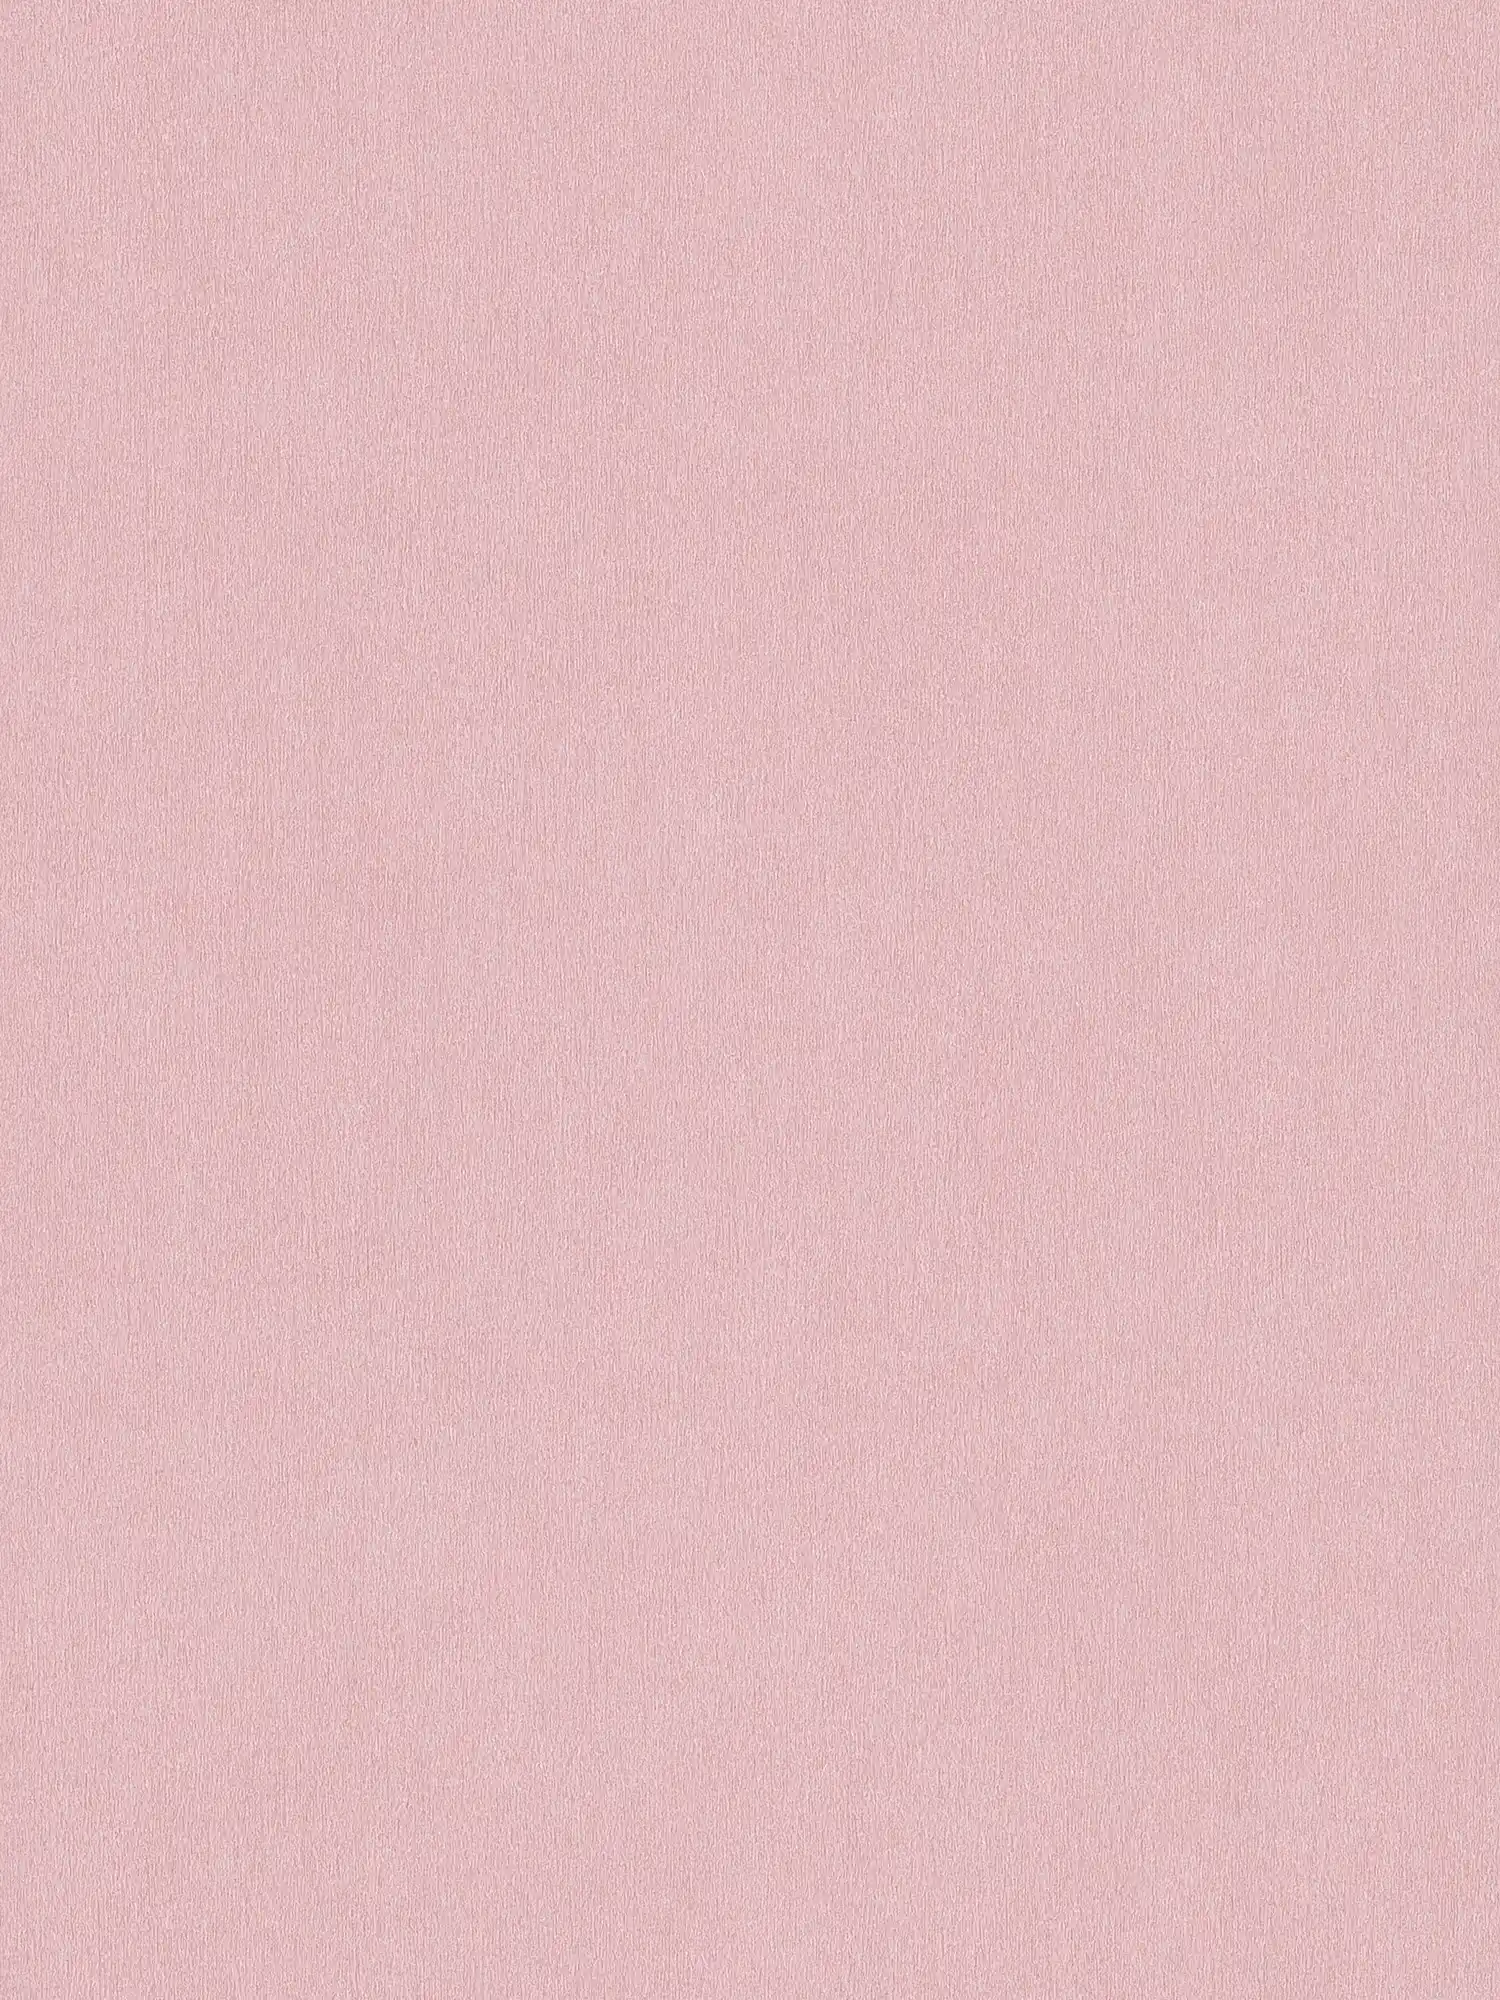 Carta da parati rosa a tinta unita con tratteggio a colori
